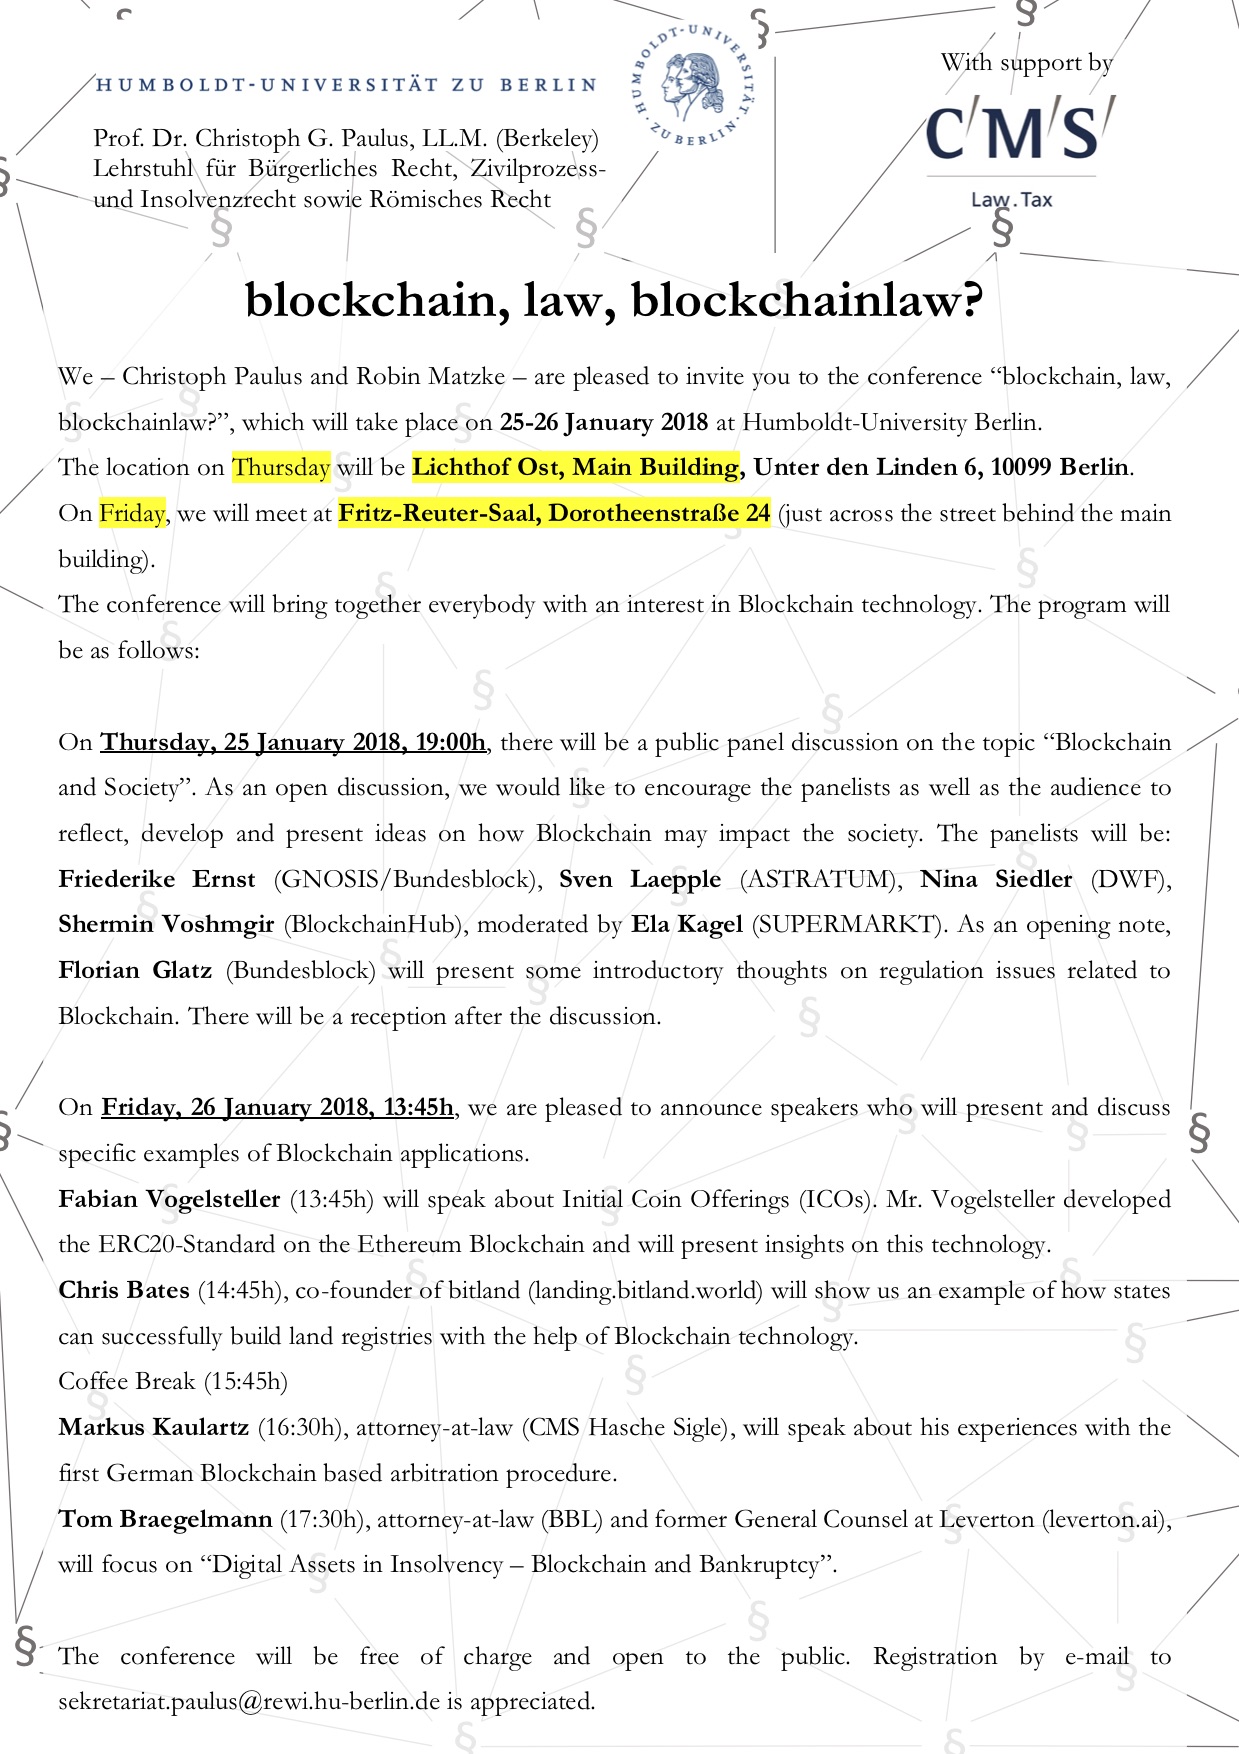 Blockchain Conference Invitation fina